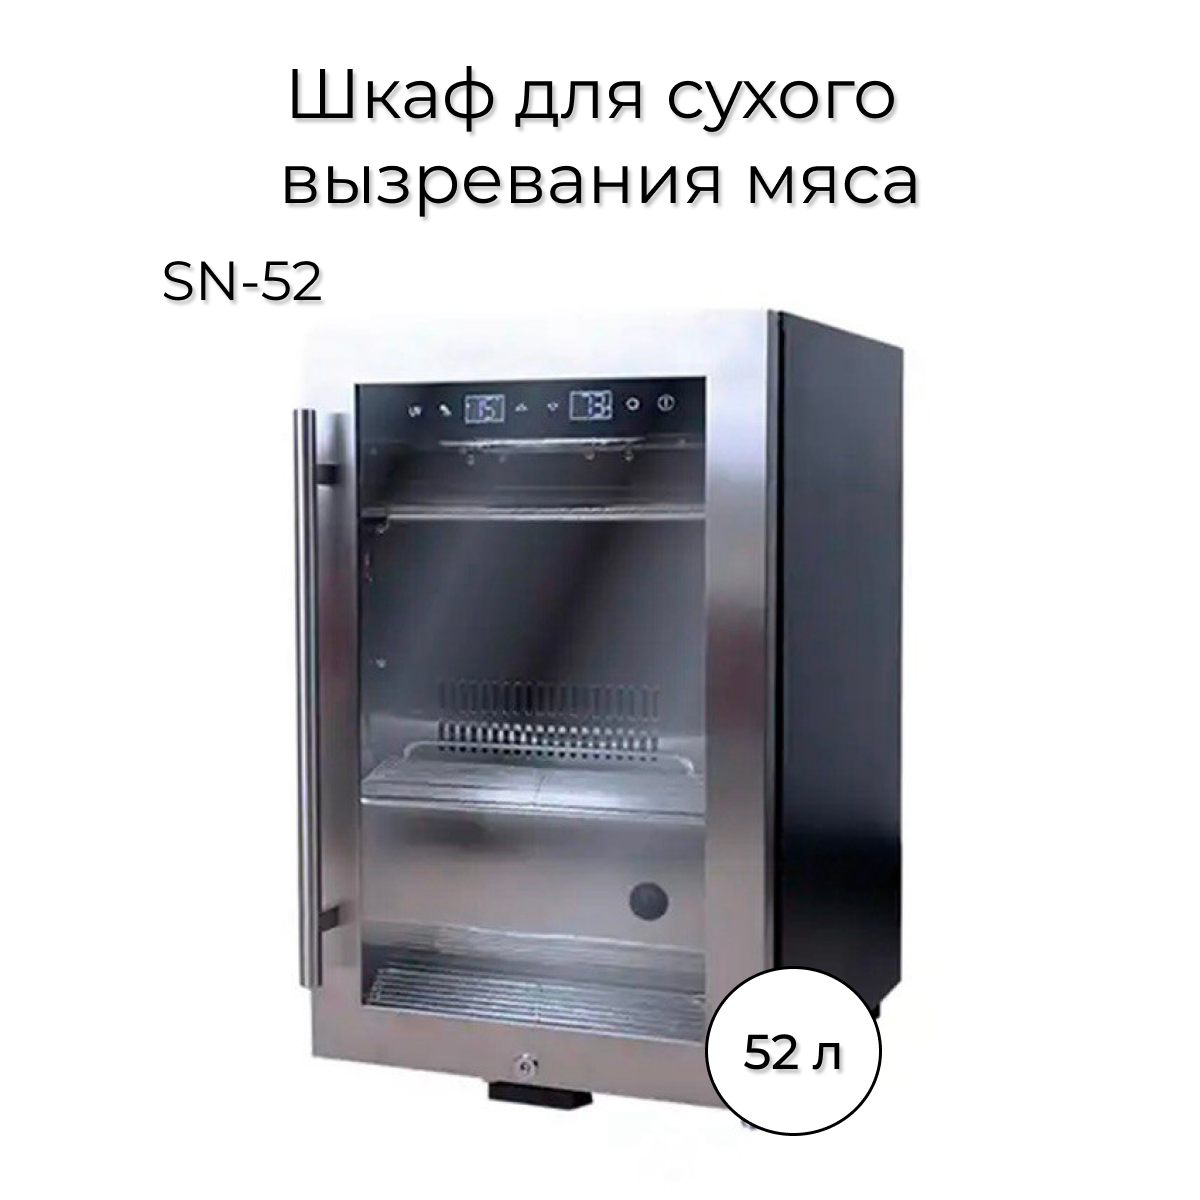 Холодильник Wistora SN-52 серебристый flamingo игрушка для собак кость из резины с ароматом говядины 13см